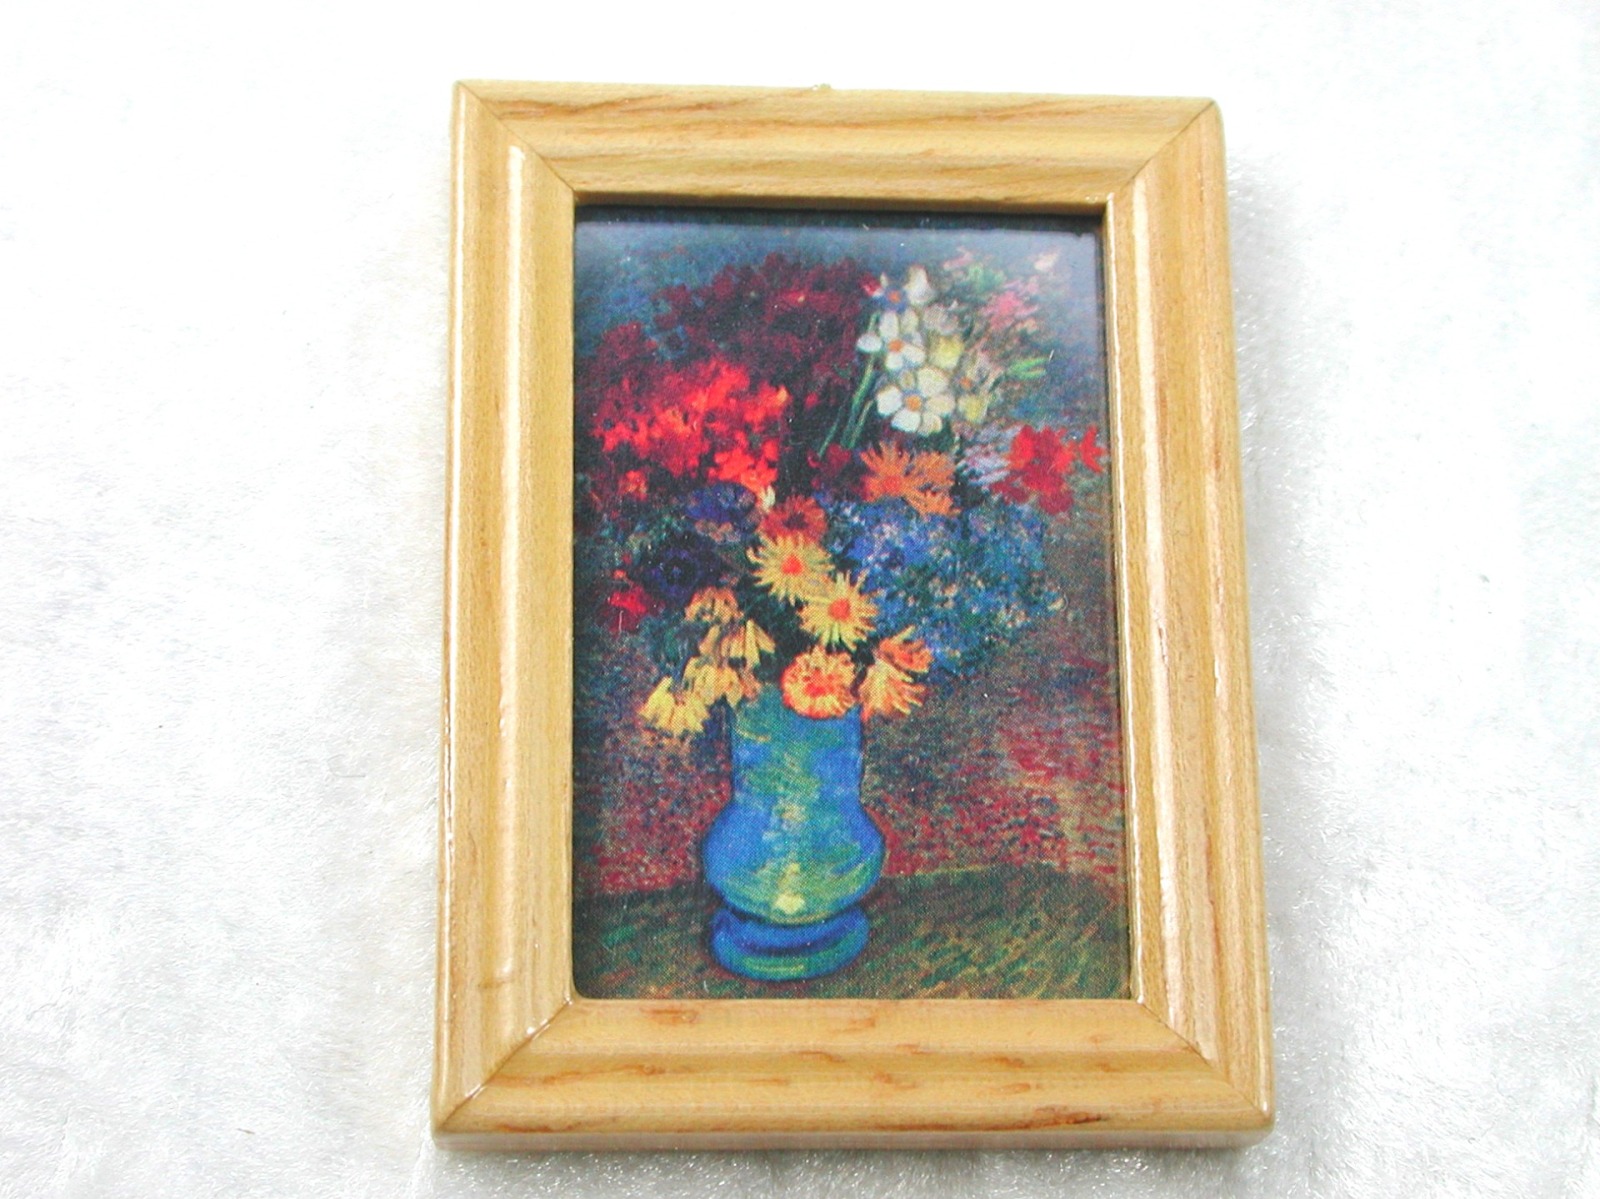 Gemäldekopie Blumenstrauß im Holzrahmen 45 x 55 x 05 cm